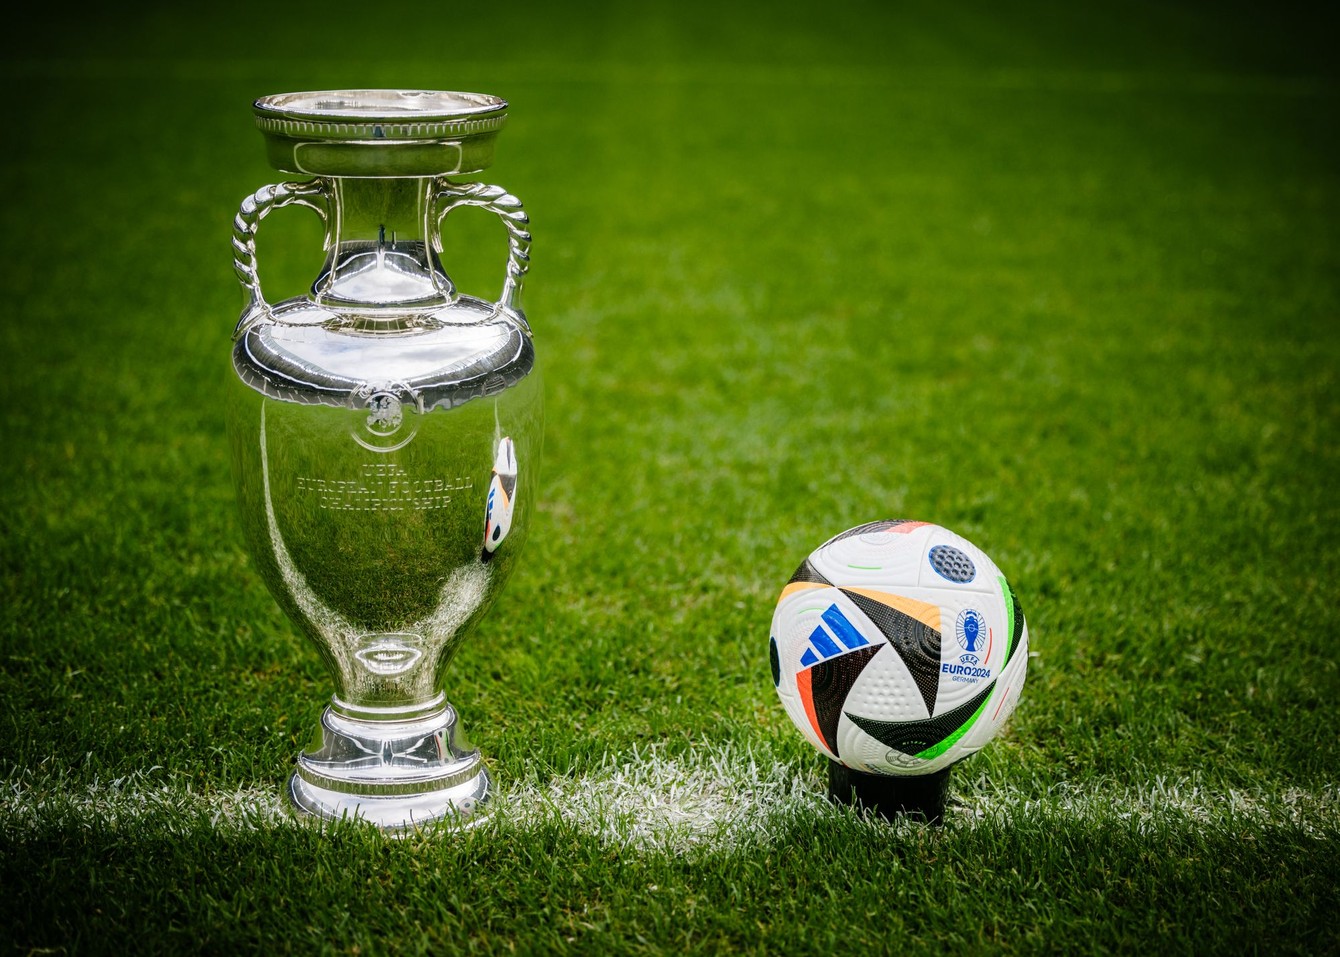 Trofej, o ktorú sa mesiac bude v Nemecku hrať, a lopta s menom Fusballliebe, futbalová láska, s ktorou s abude hrať.